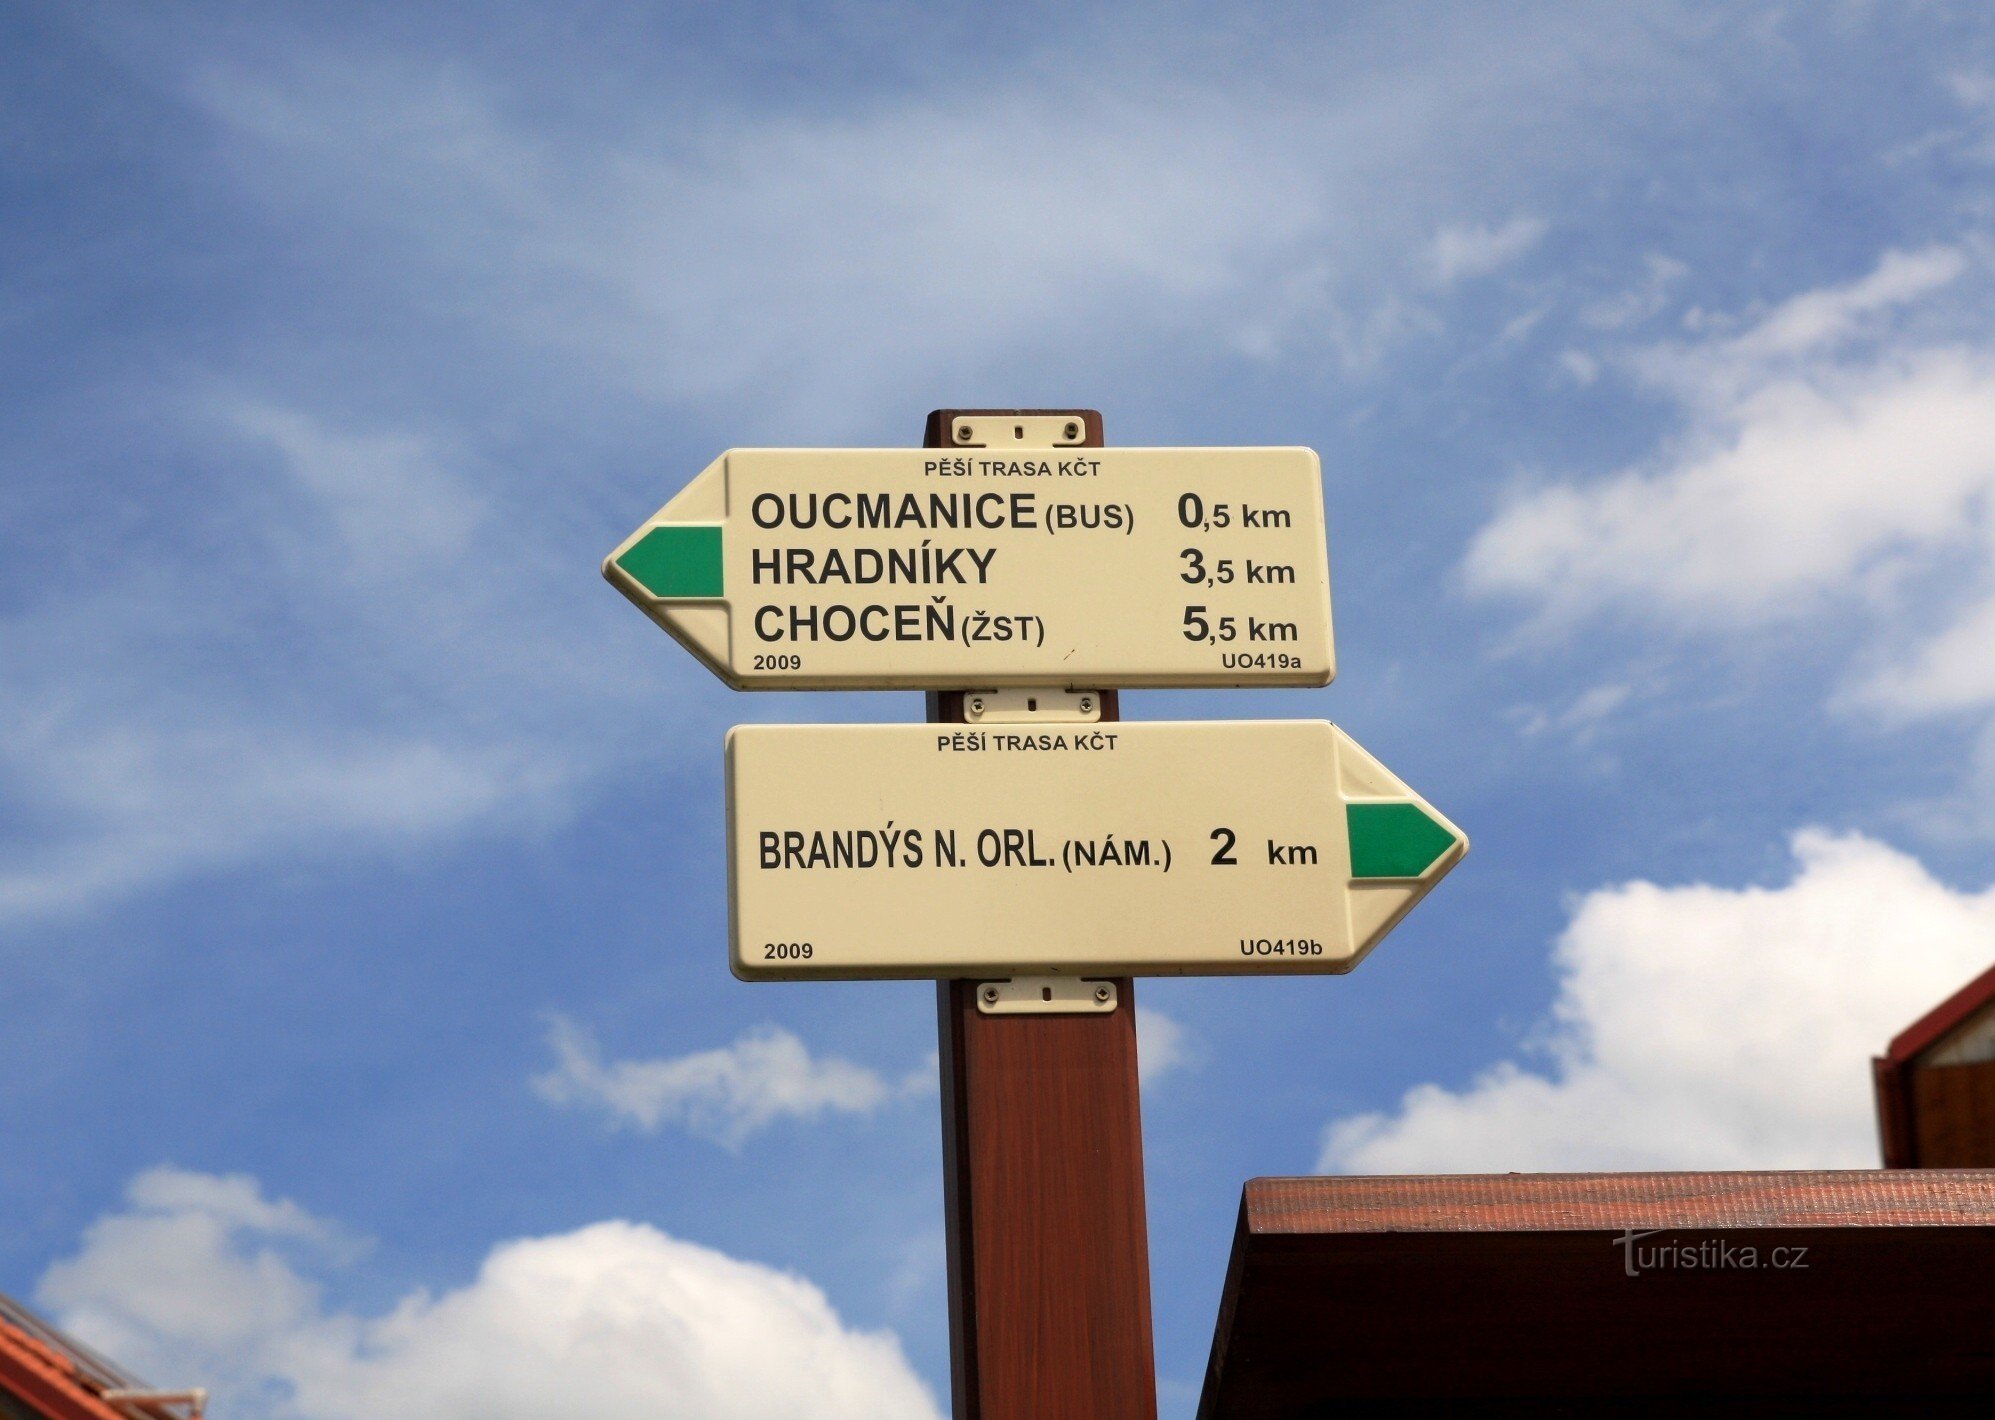 Oucmanice - turisztikai útkereszteződés Paleta